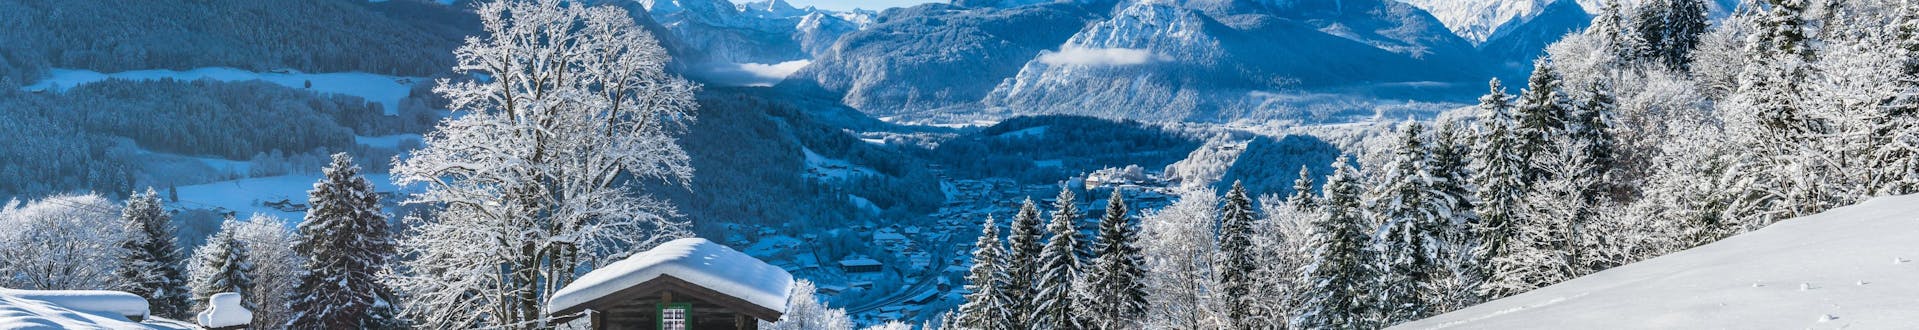 Ein Blick über die verträumte Winterlandschaft im Berchtesgadener Land, einem beliebten deutschen Skigebiet in dem Besucher bei einer der örtlichen Skischulen Skikurse buchen können.